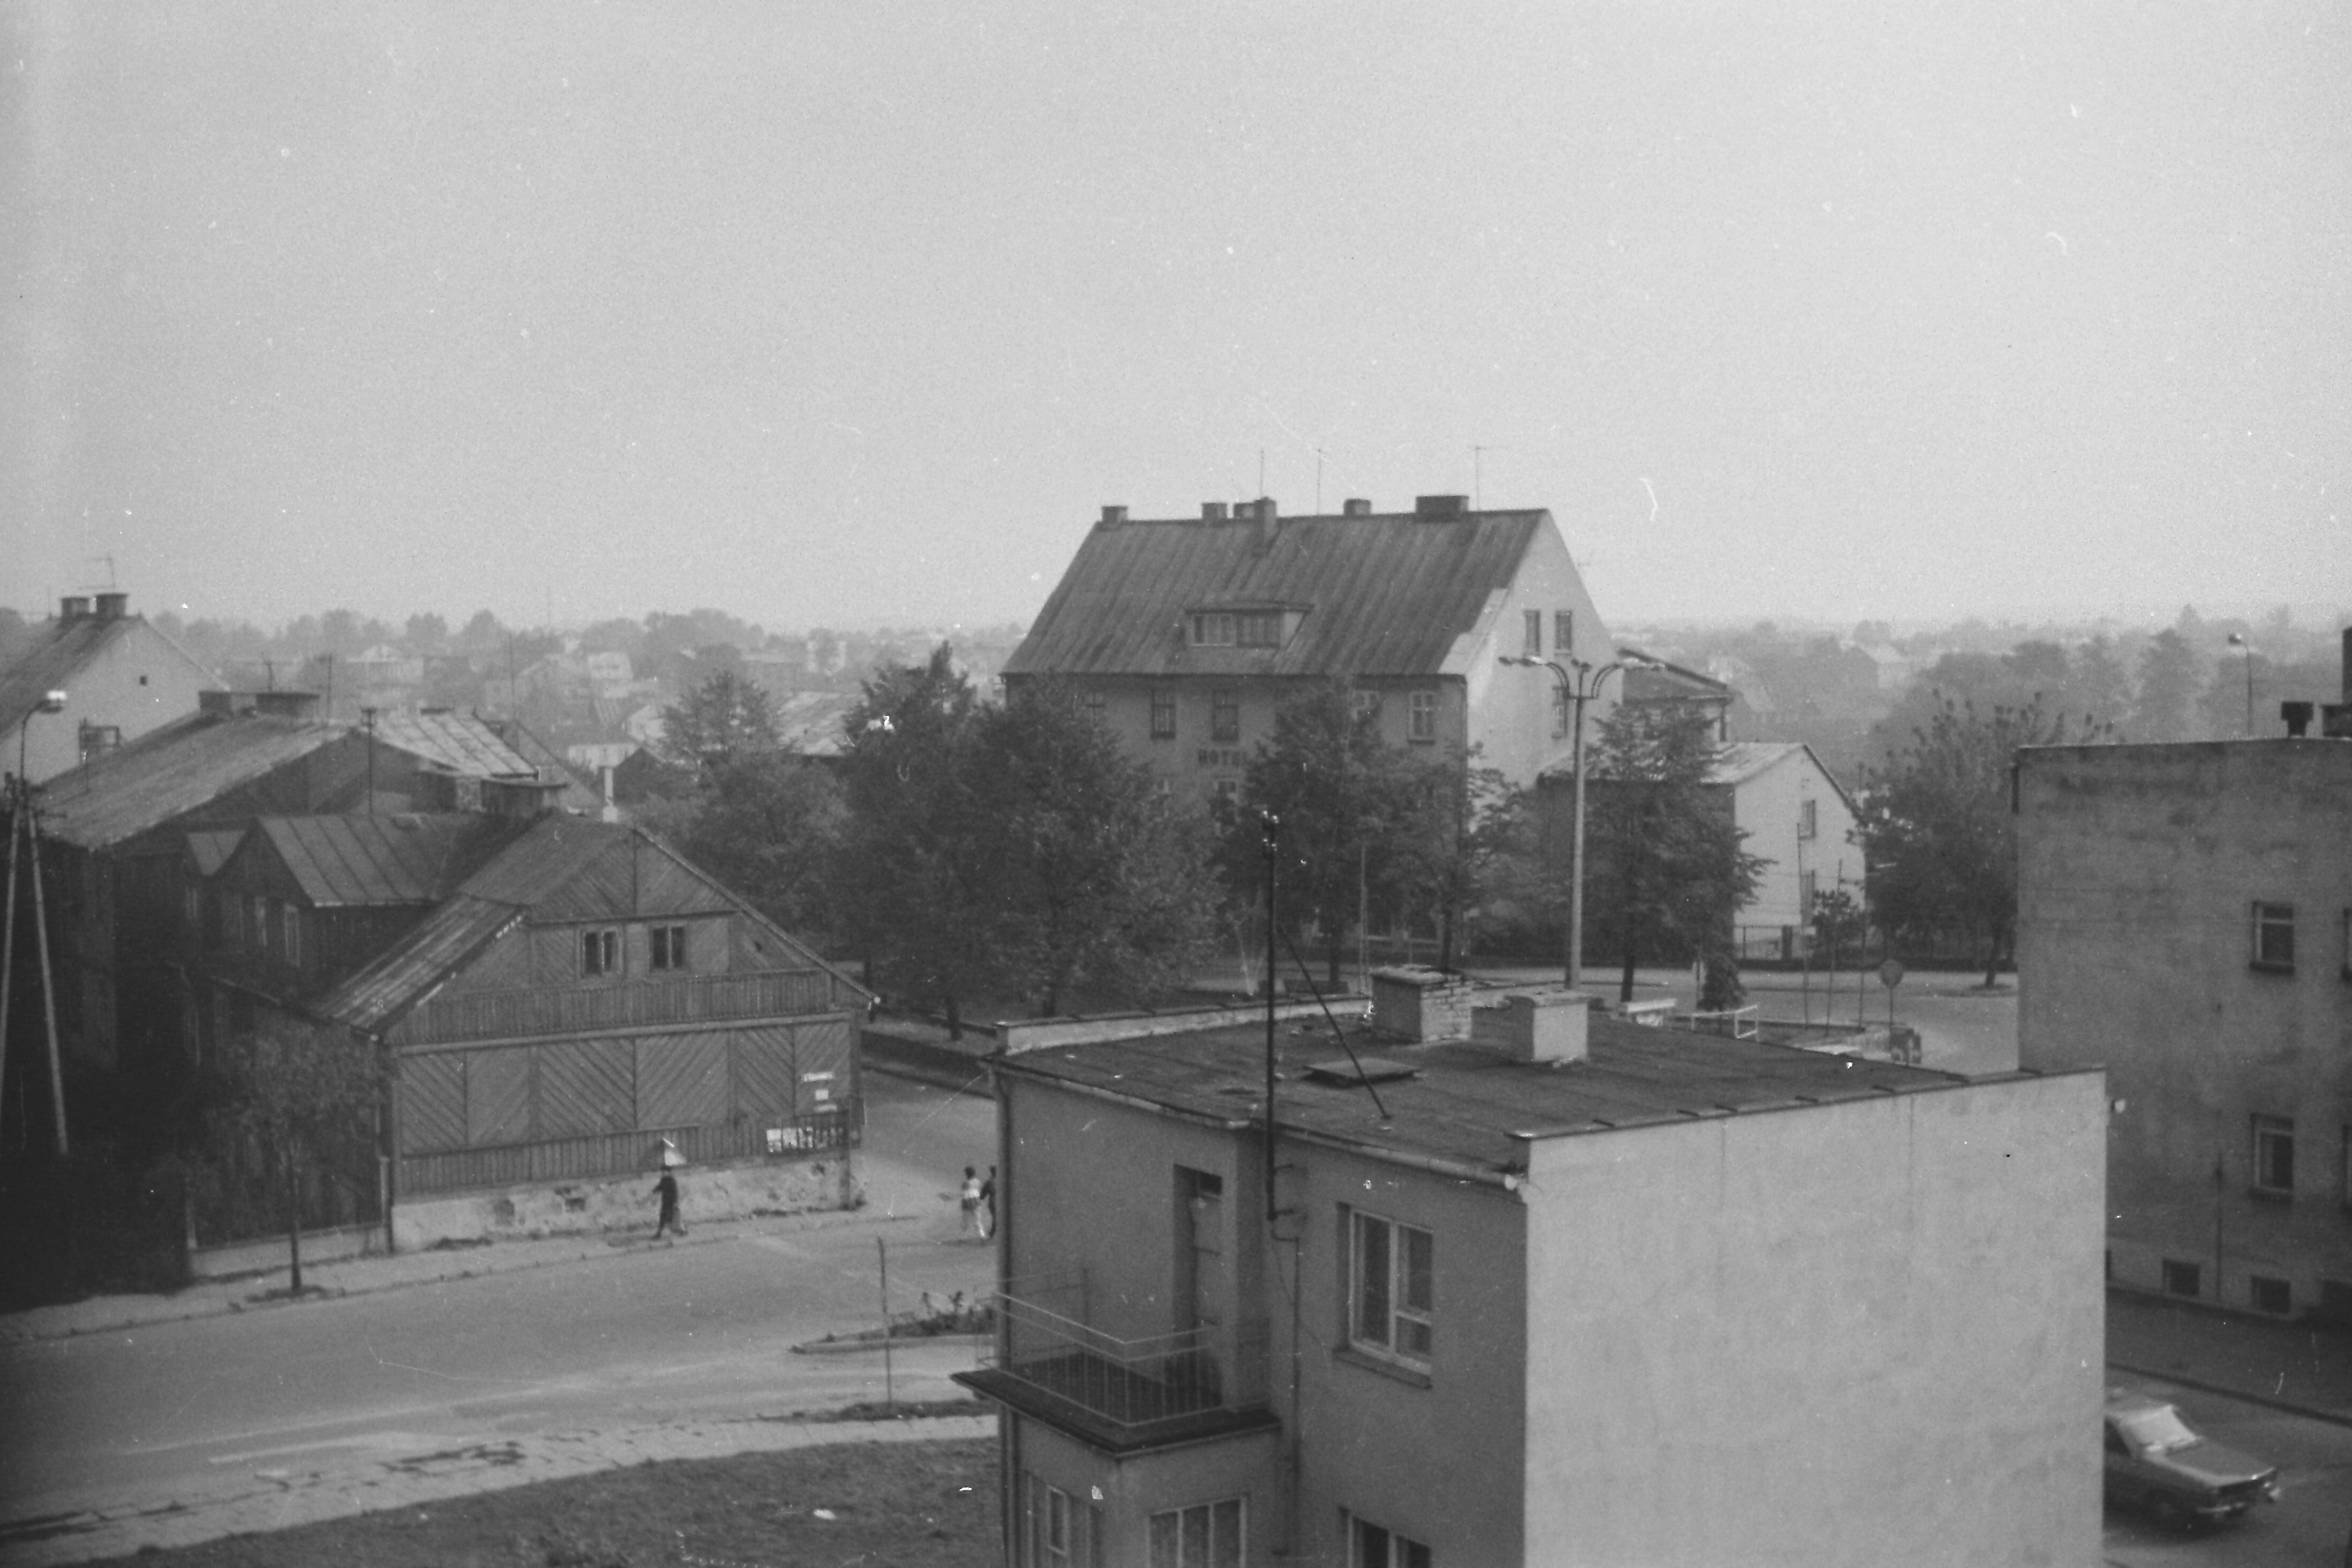 Zdjęcie wykonane w 1986 r., przedstawia widok na skrzyżowanie ulic Narutowicza i Piastowskiej z nieistniejącą obecnie drewnianą zabudową.